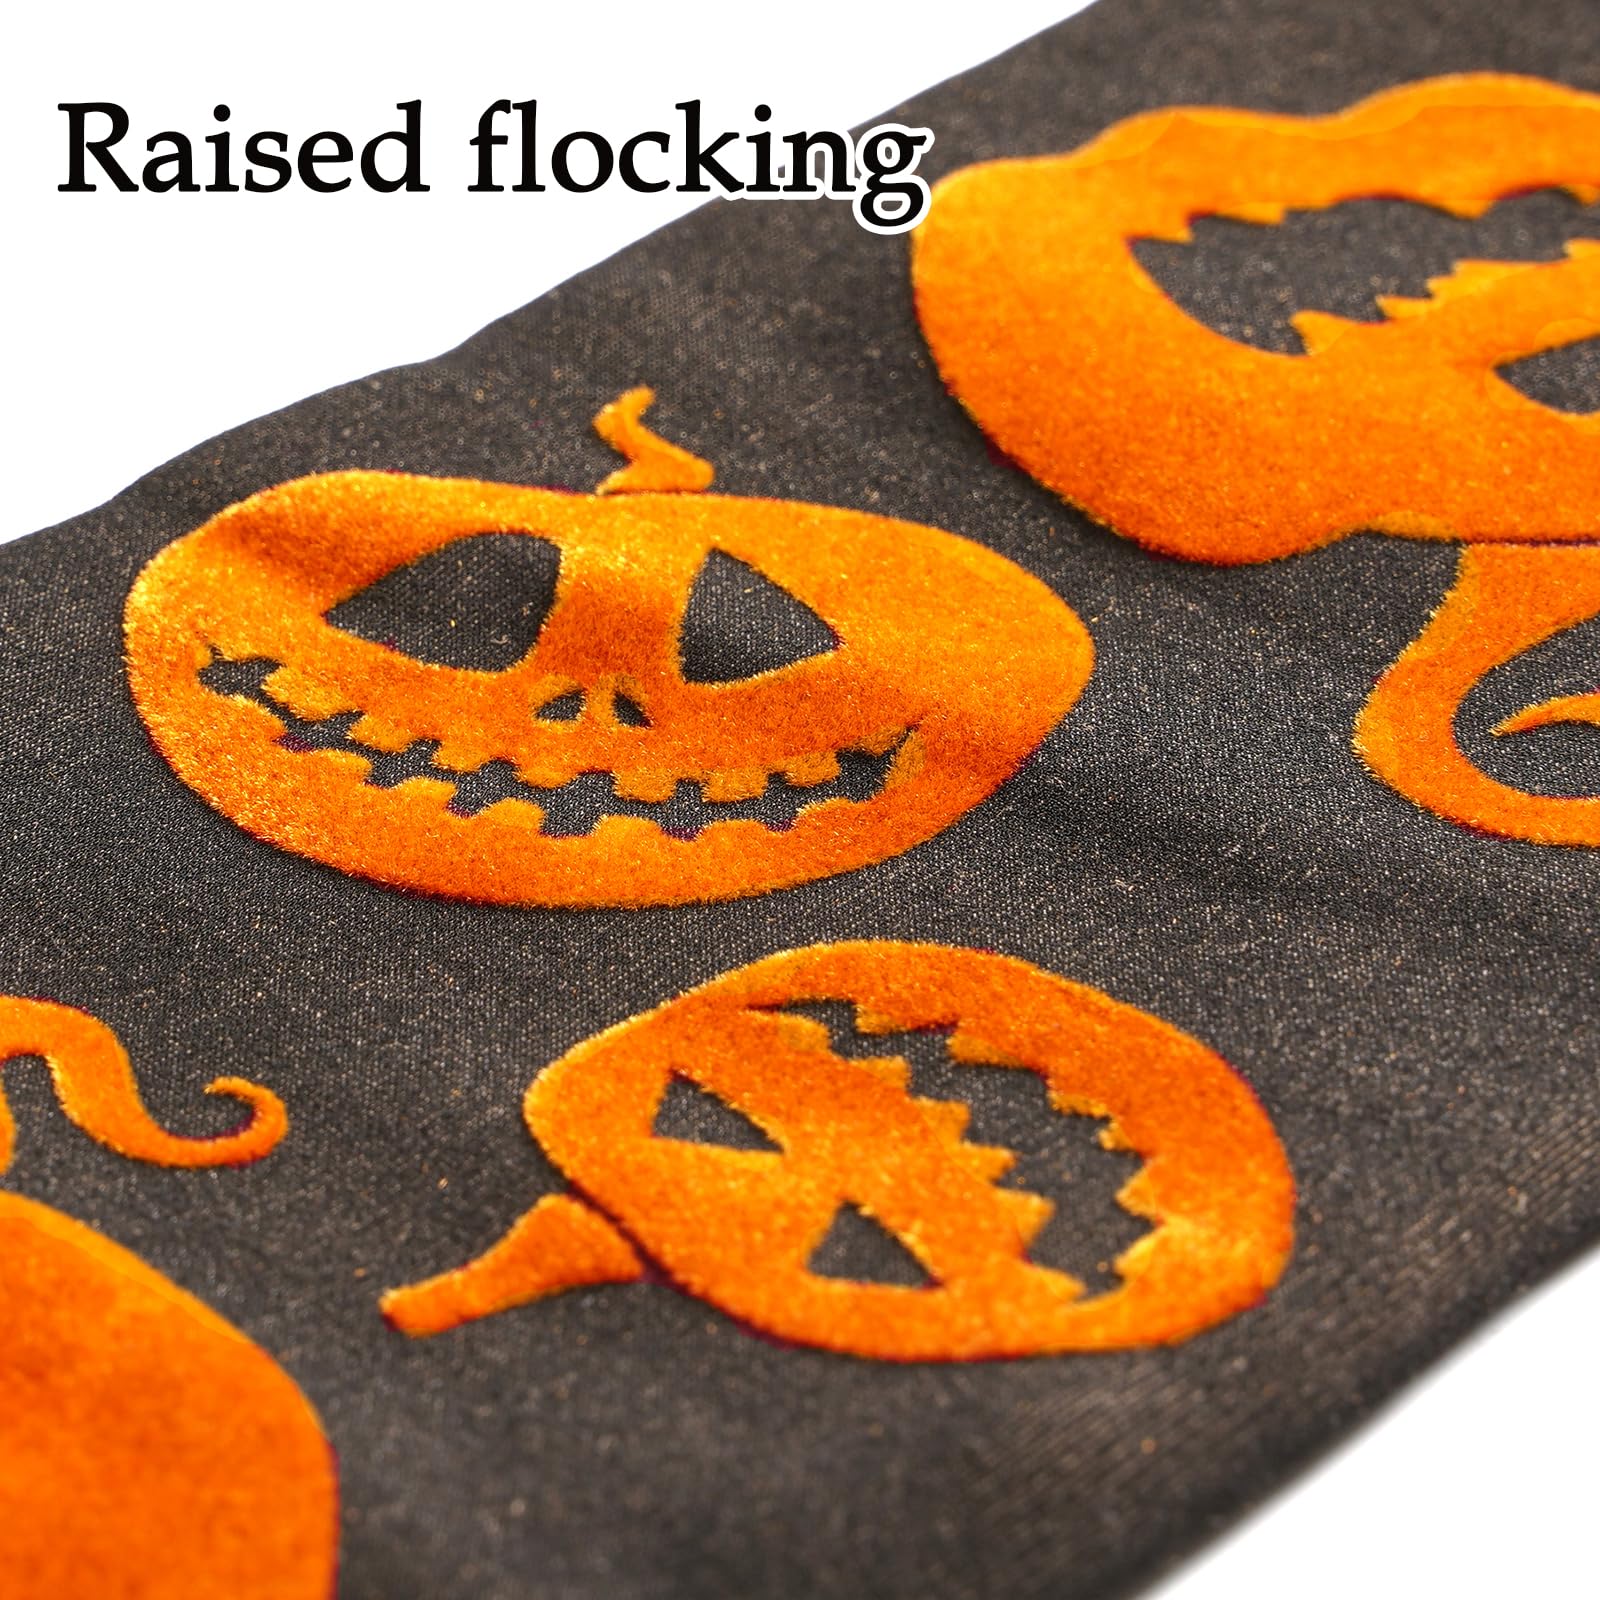 Fleece Lined Thigh High Socks Translucent-Pumpkin - Moon Wood